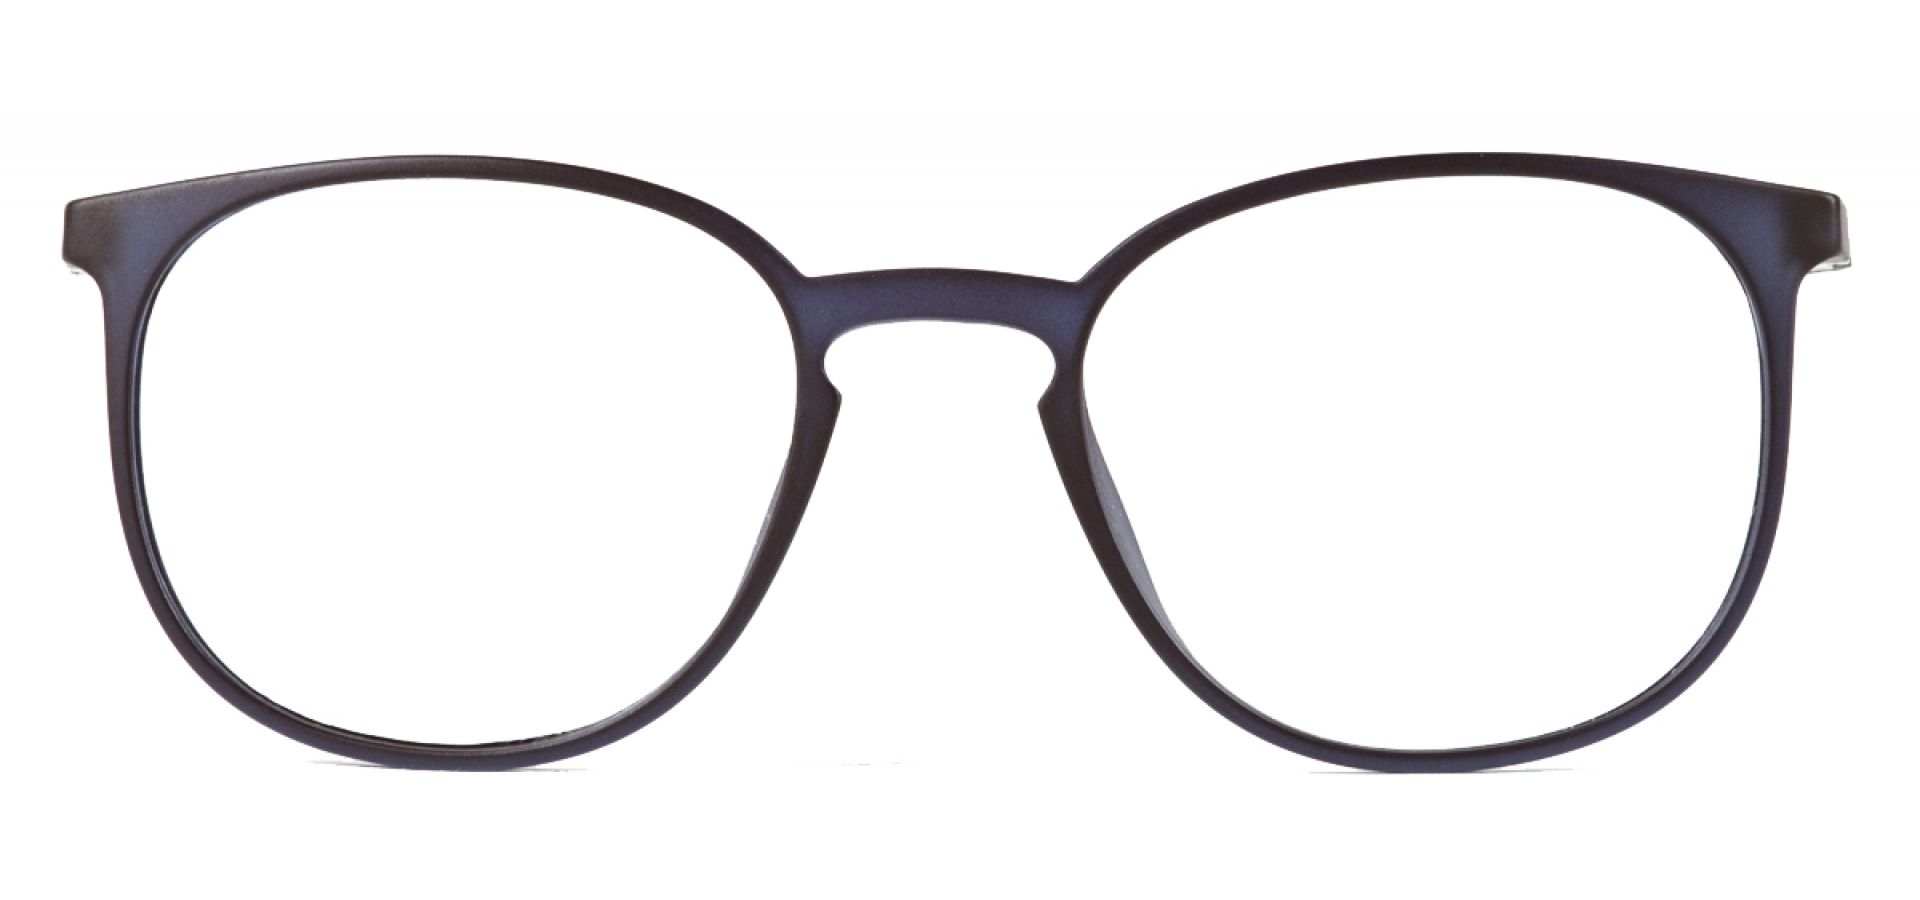 Dioptrijske naočale Ghetaldus NAOČALE ZA RAČUNALO GHA106: Boja: Dark Blue, Veličina: 50/19/140, Spol: muške, Materijal: acetat